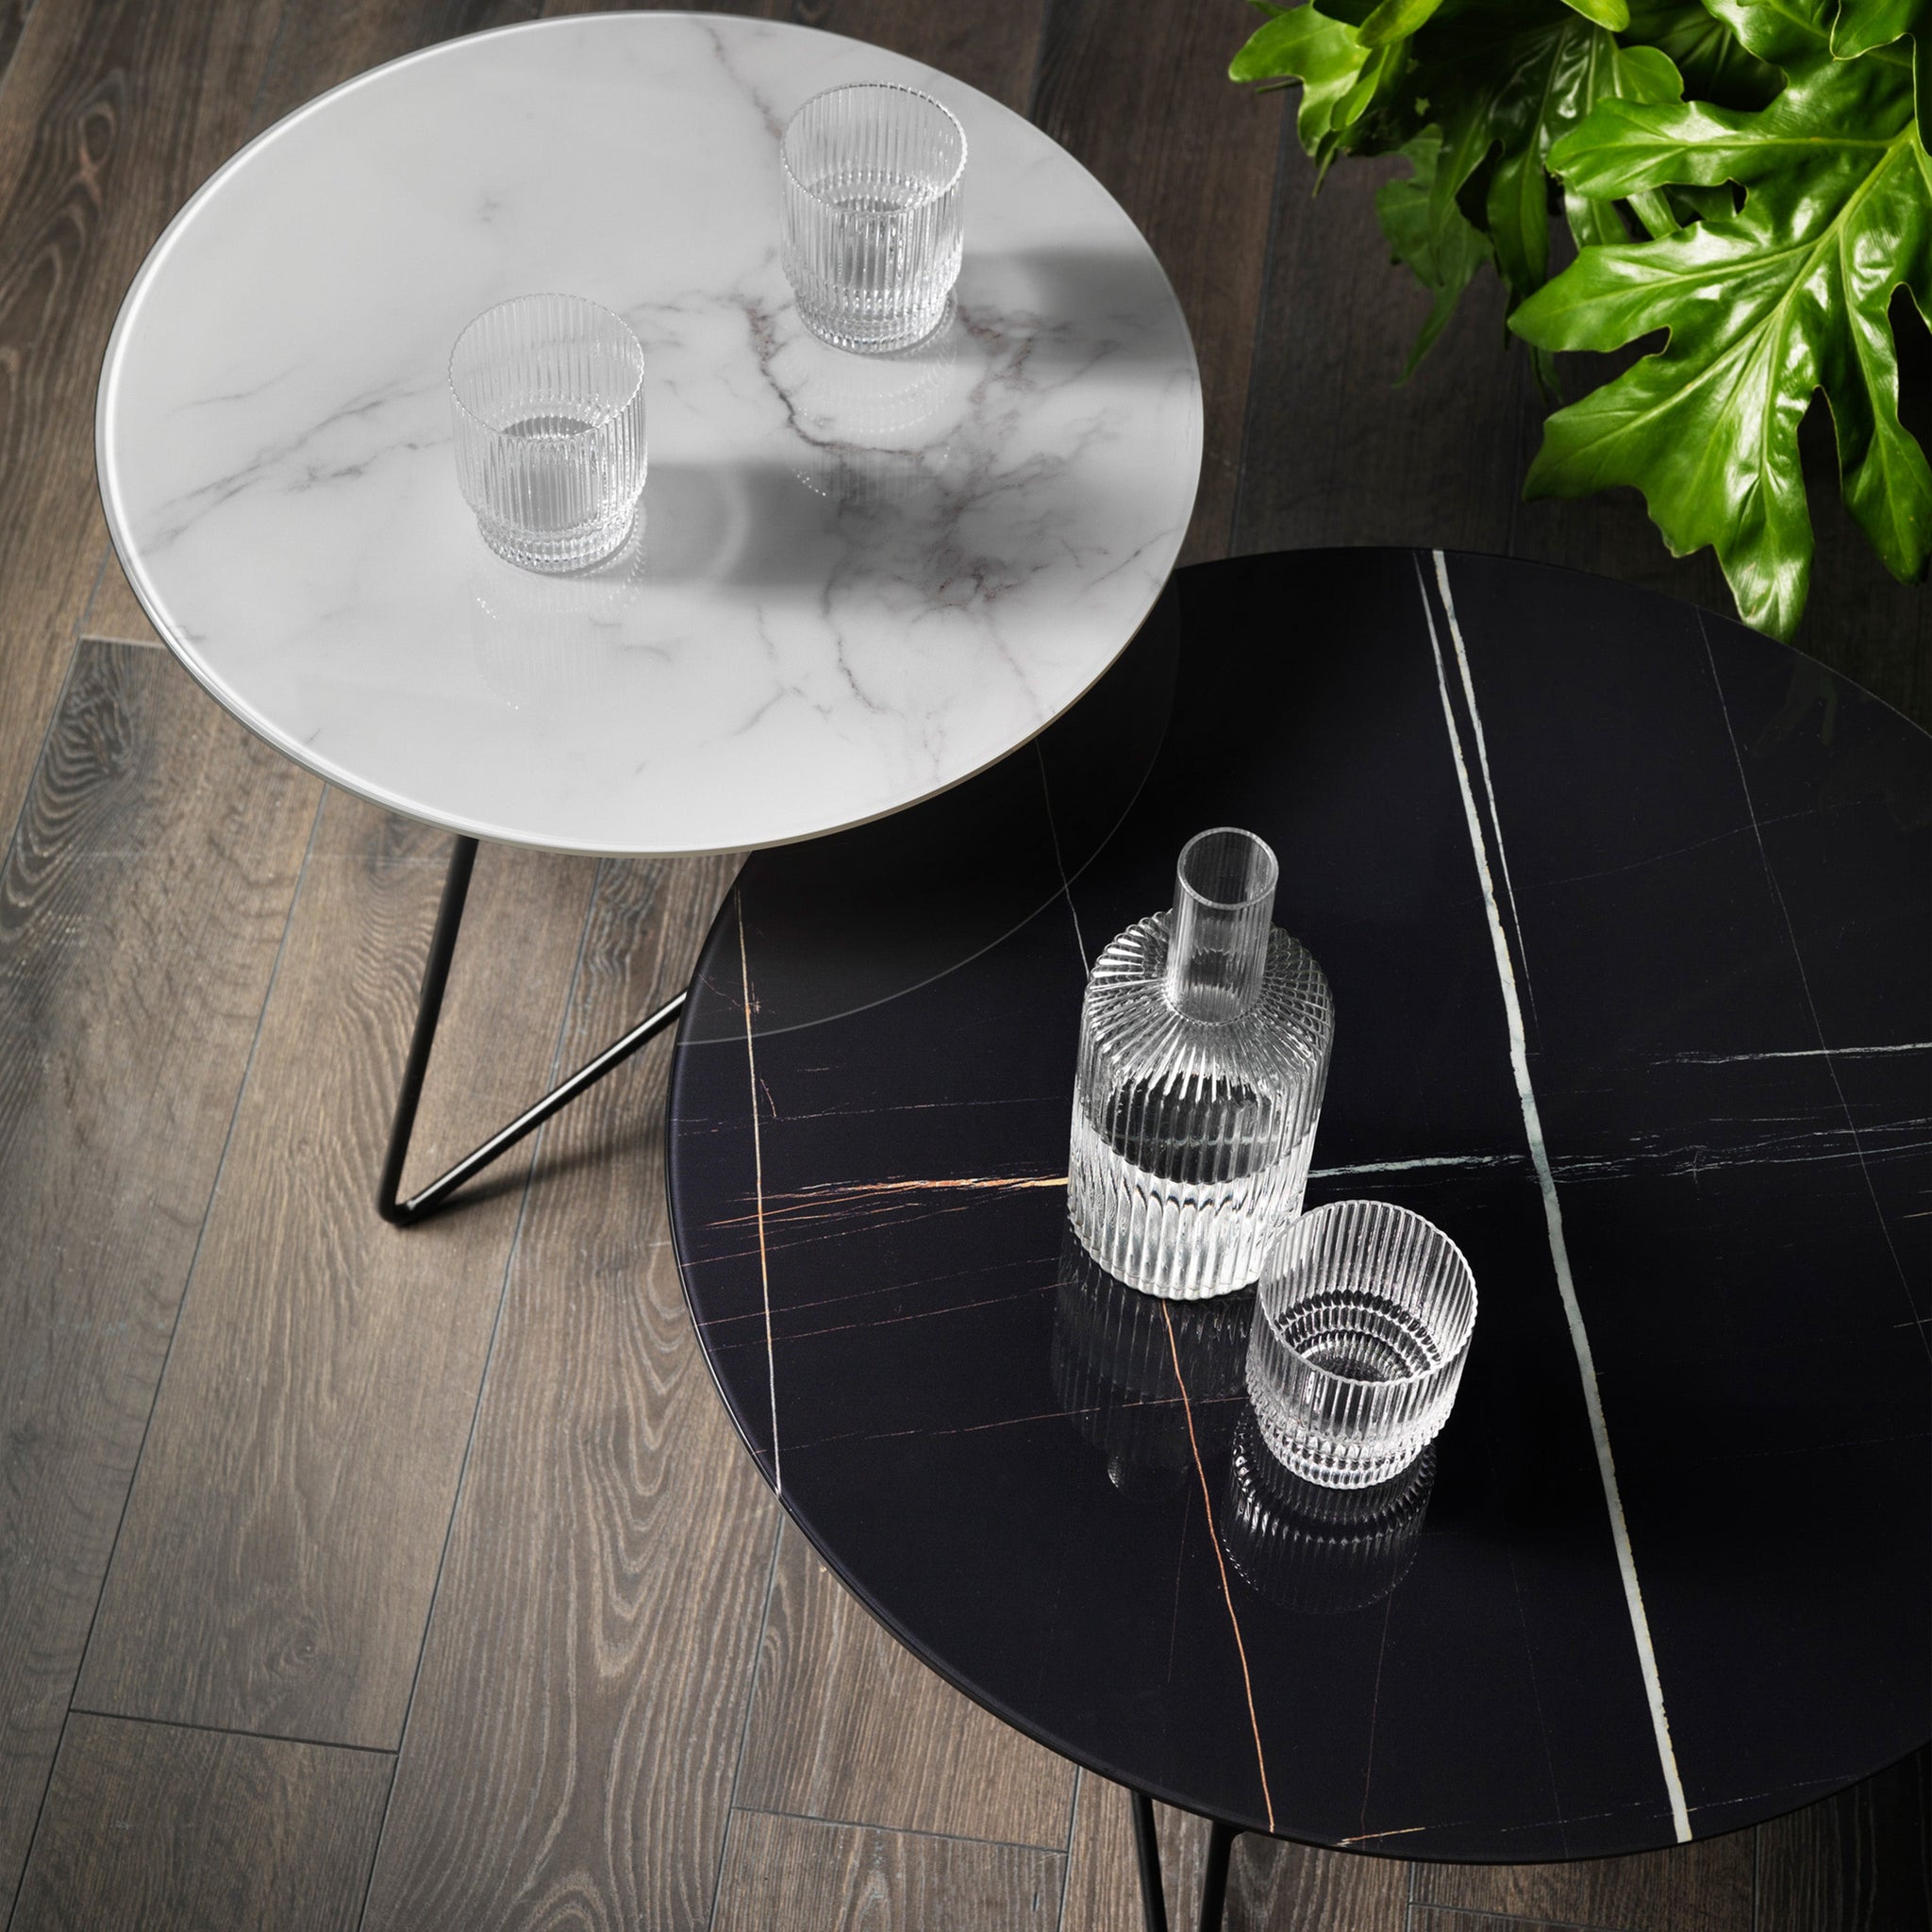 Ermione table basse ronde de salon avec plateau en verre marbre sahara noir h25